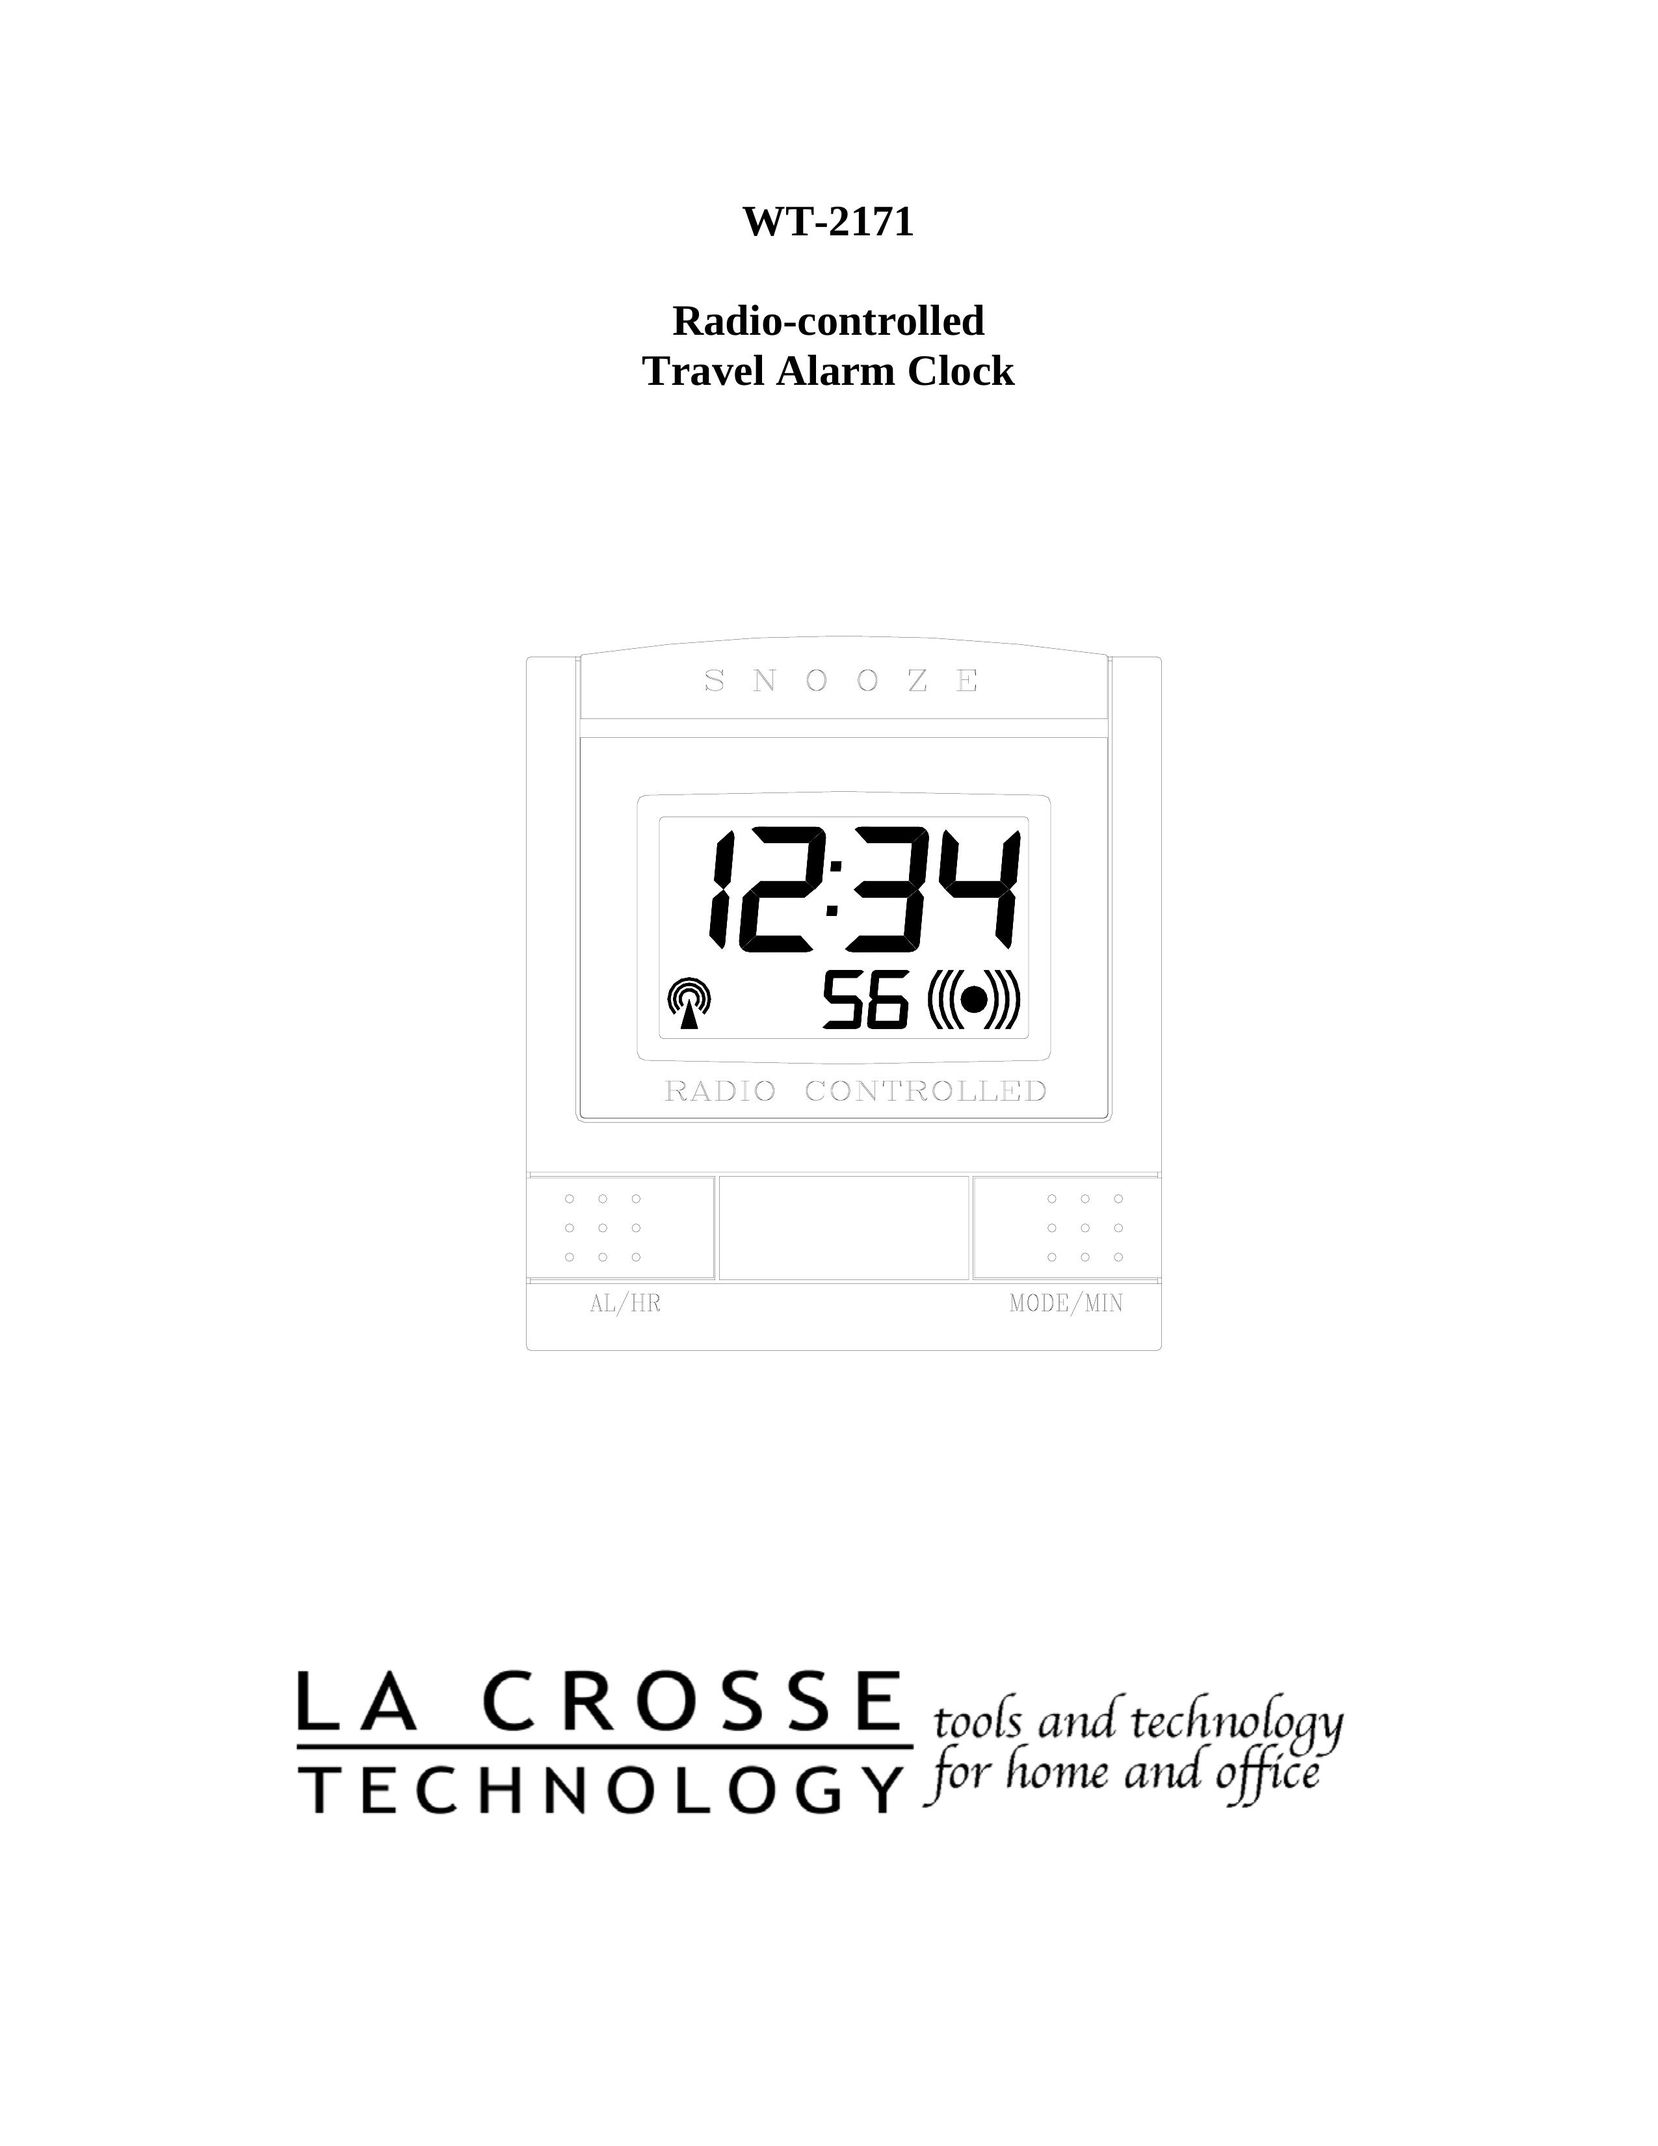 La Crosse Technology WT-2171 Clock User Manual